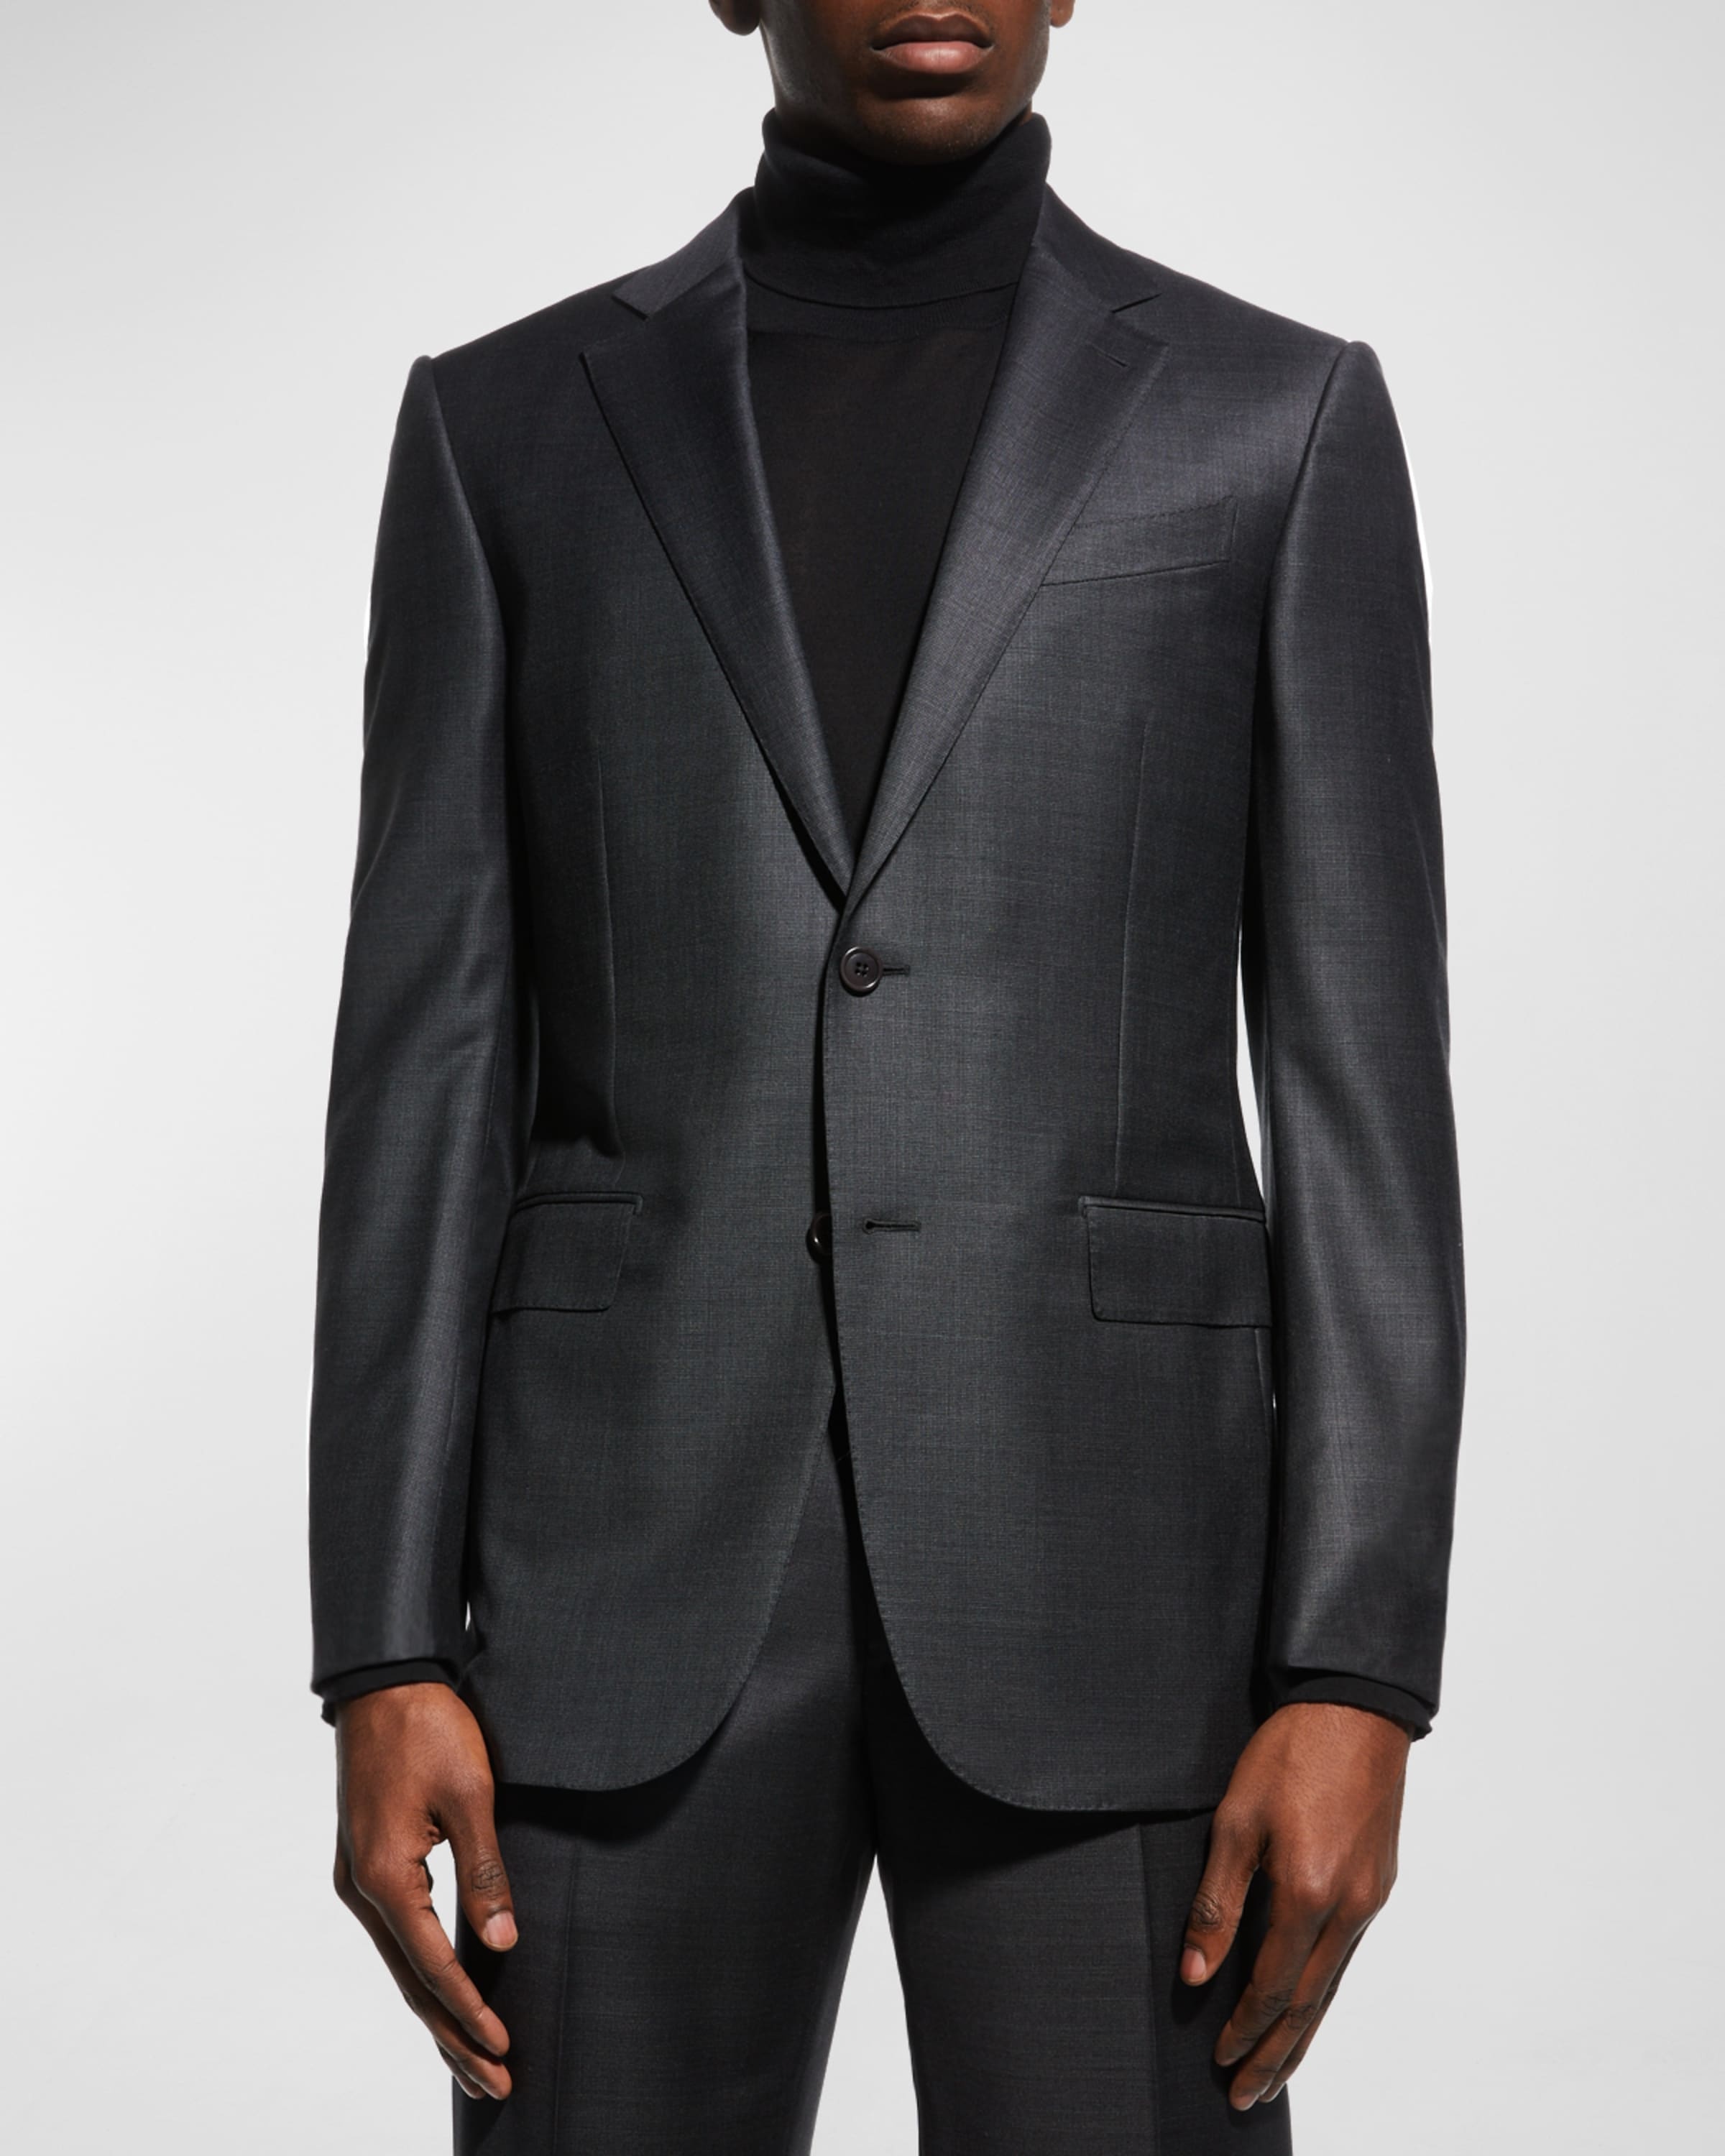 Men's Wool Tic-Weave Suit - 5